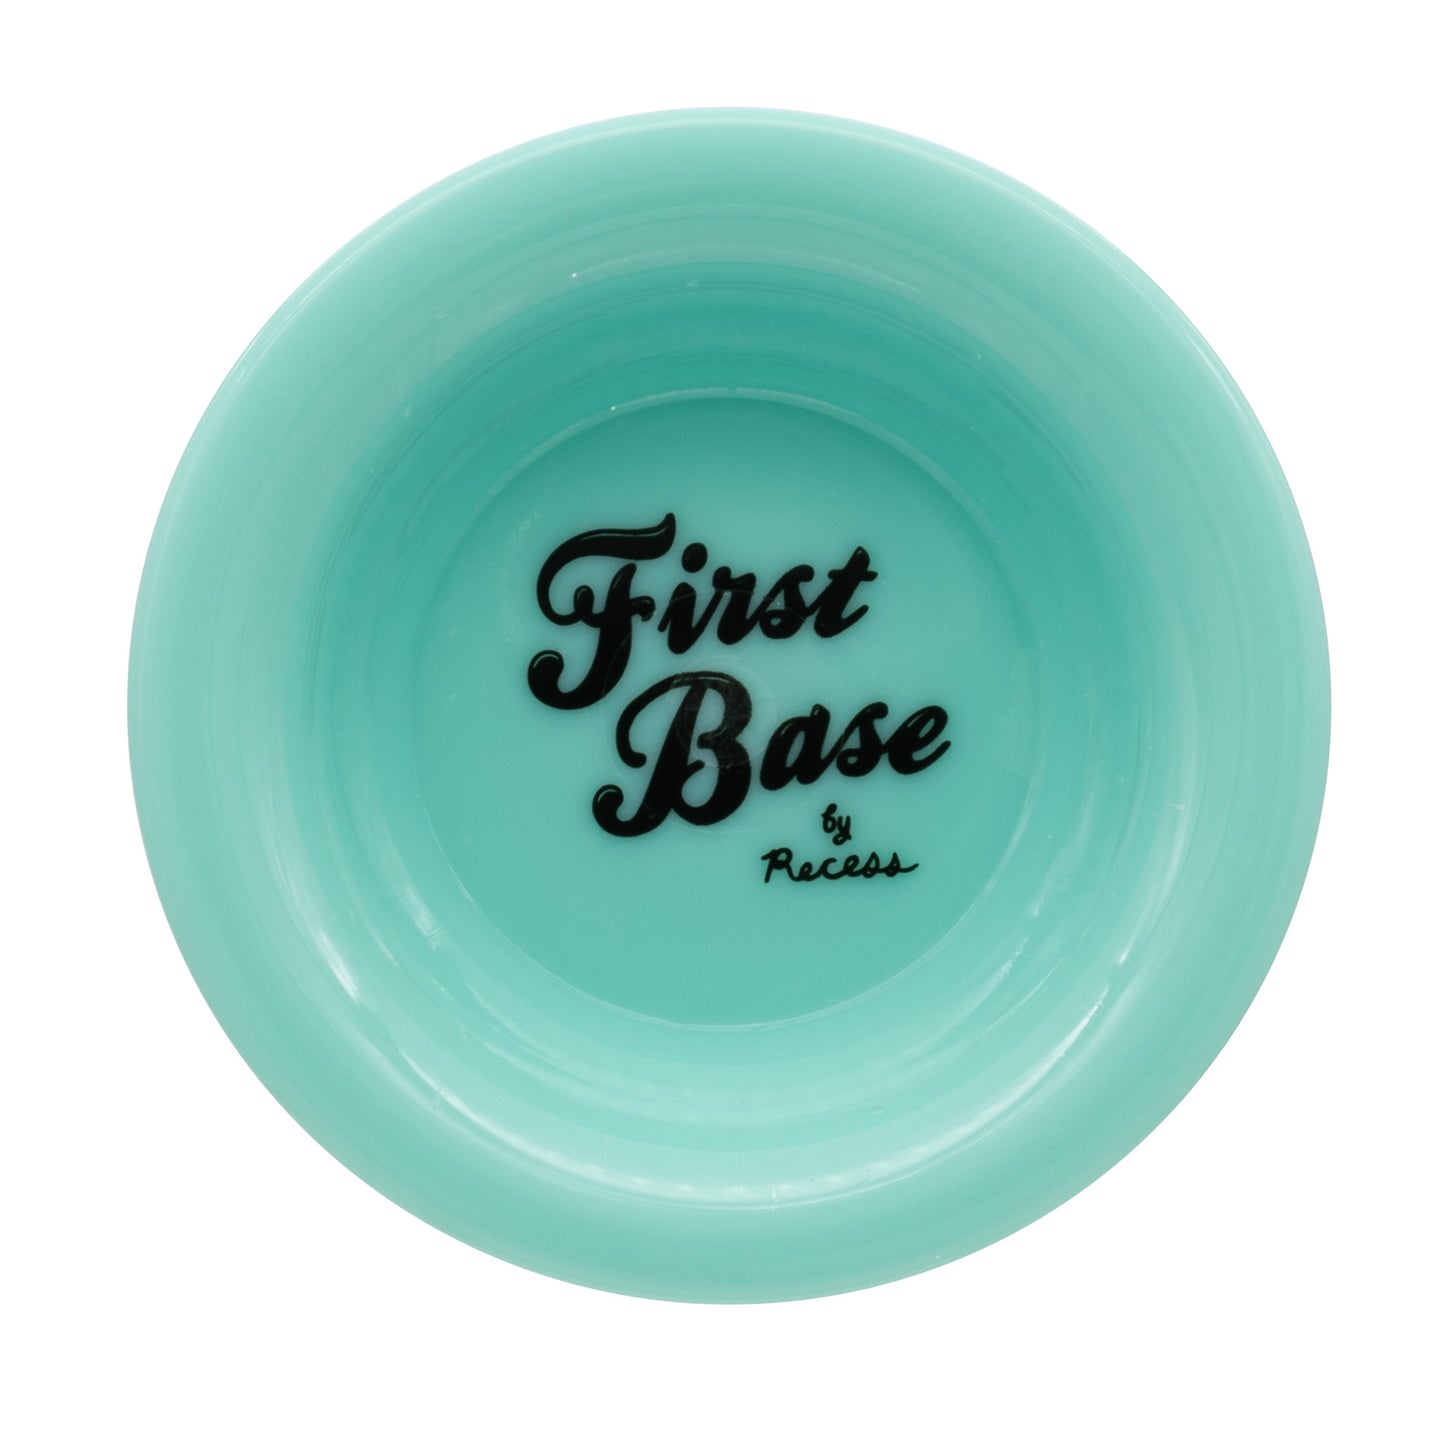 Recess First Base Yo-Yo